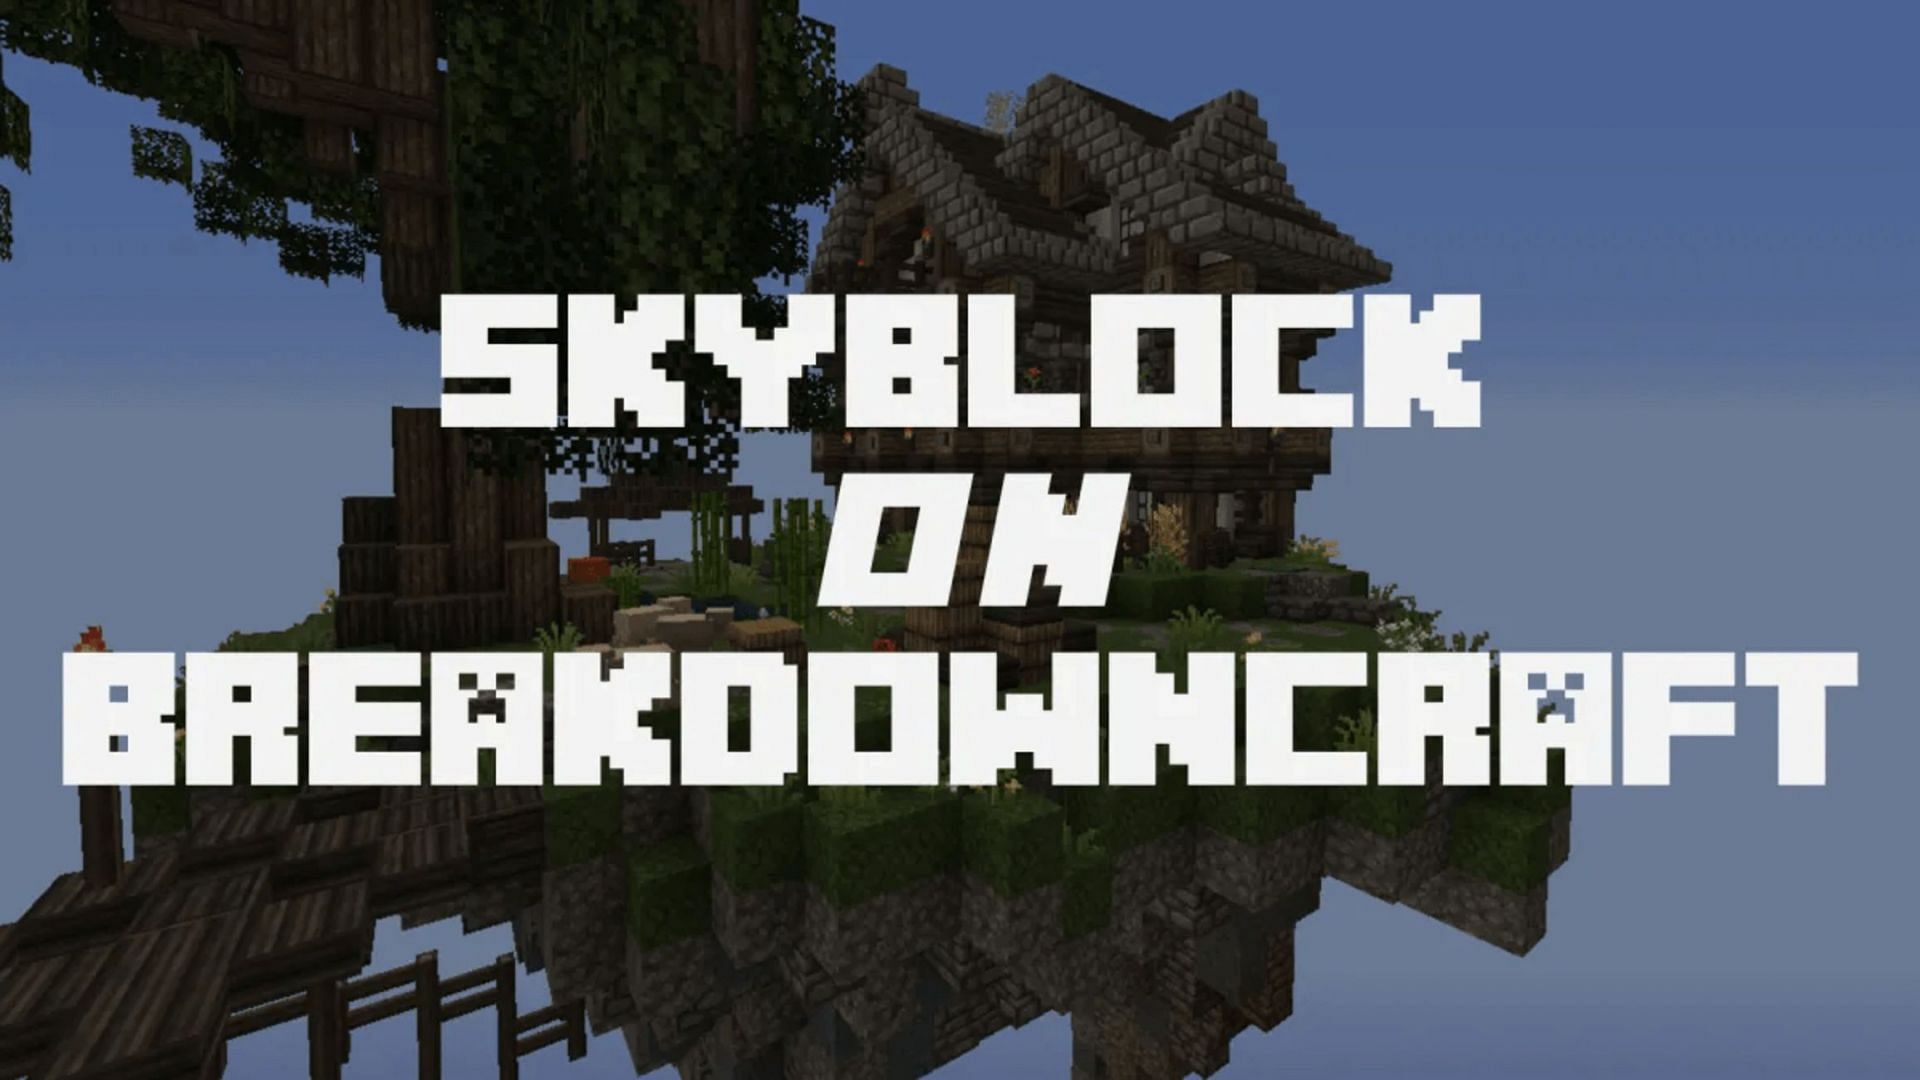 Breakdowncraft carries plenty of pluses in their Skyblock game mode (Image via Breakdowncraft)